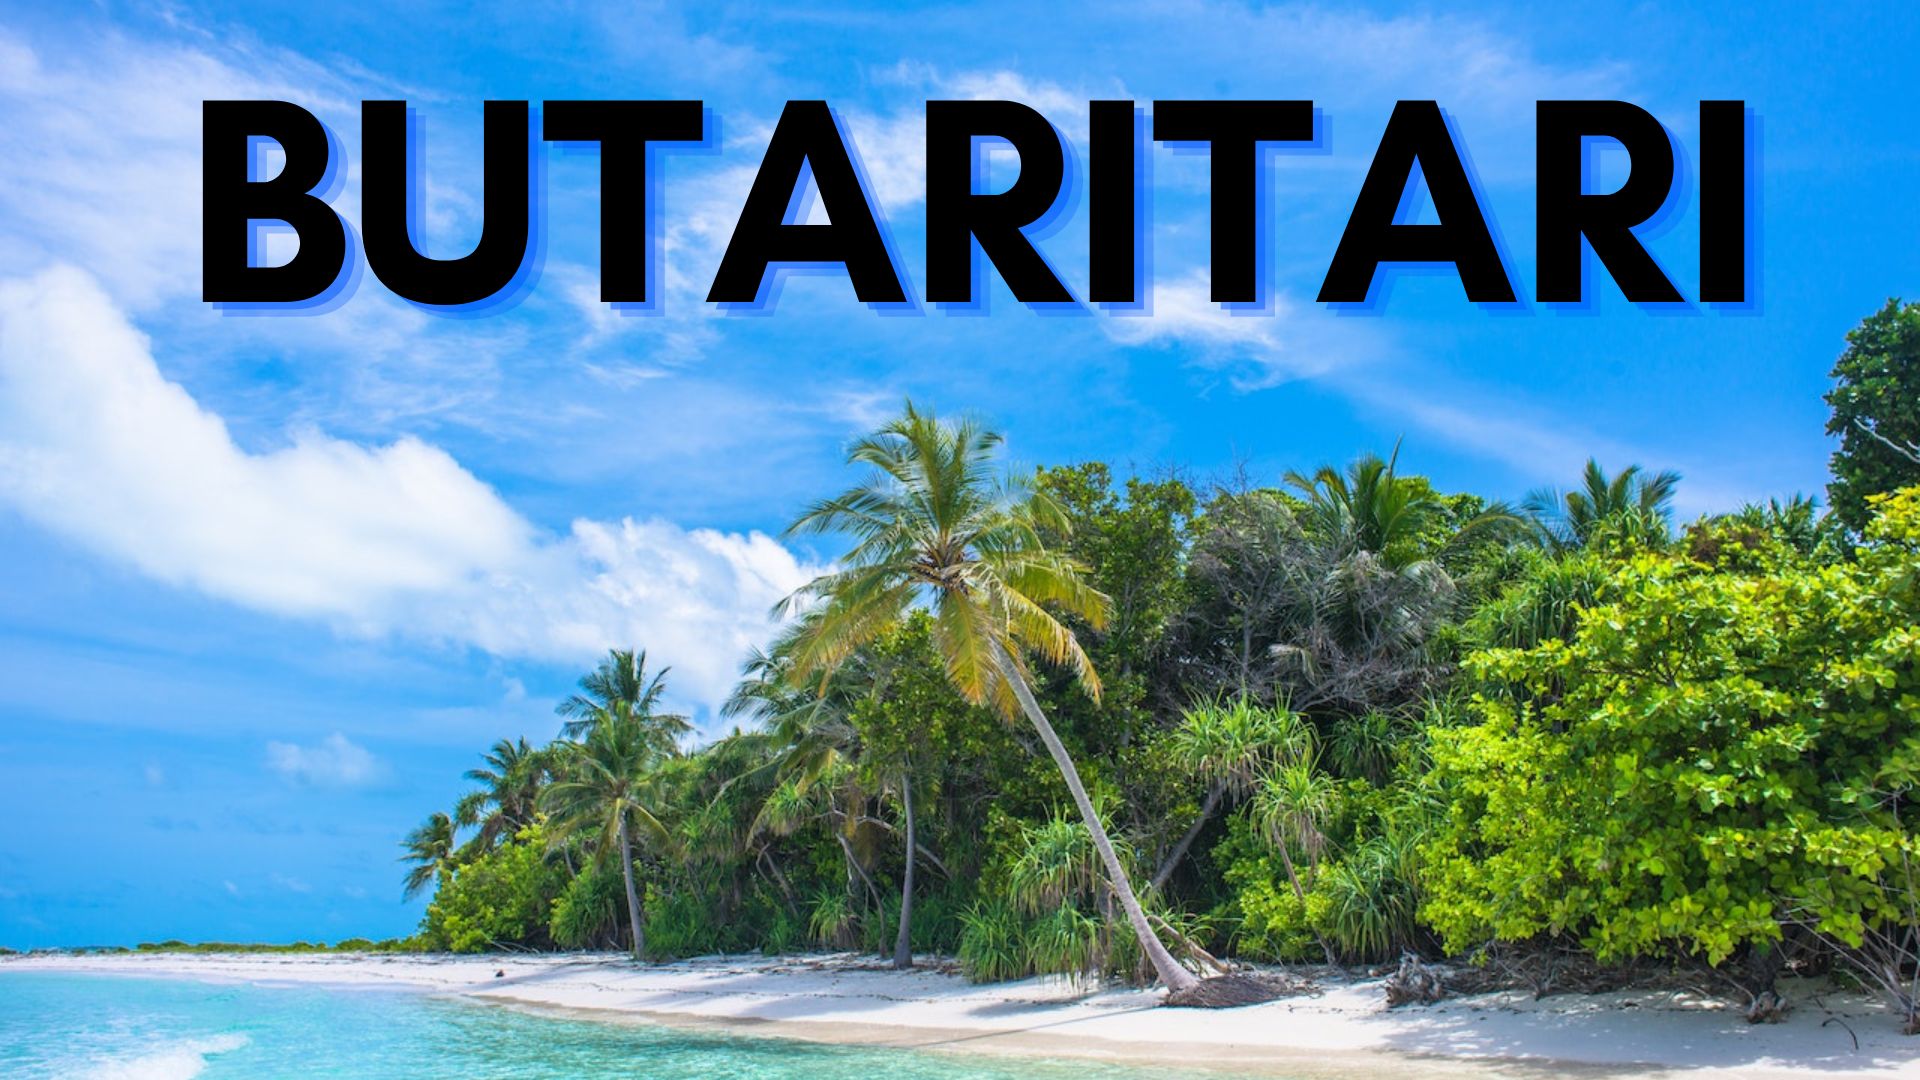 Butaritari - One Of Kiribati's Atoll Island In Pacific Ocean